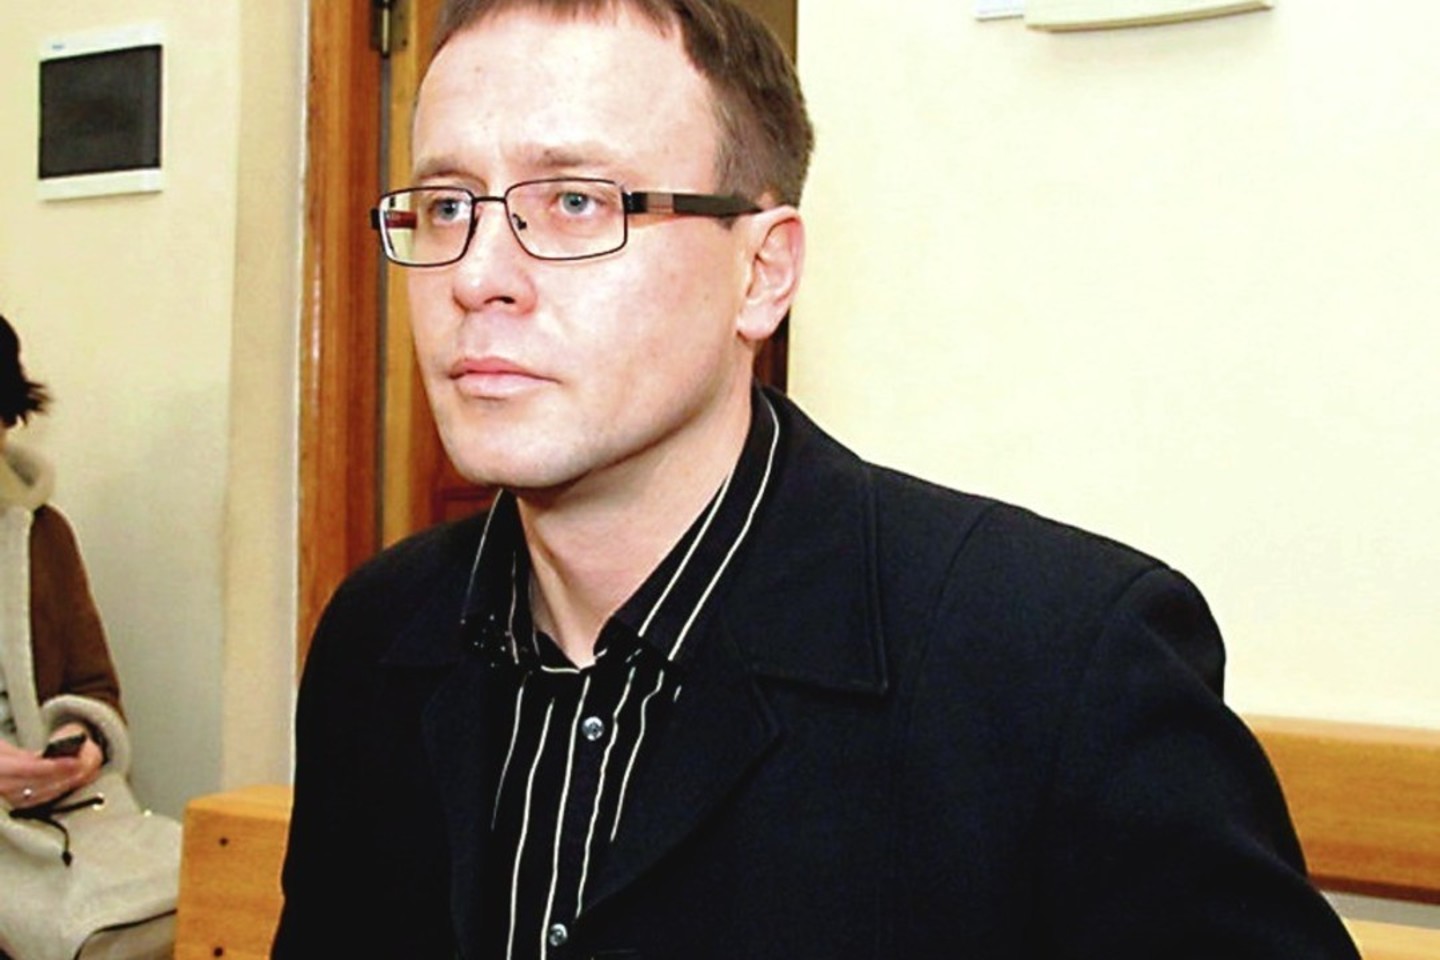  Buvęs Krikščionių partijos Kauno skyriaus vicepirmininkas D.Kripas skundė nepalankų nuosprendį prostitucijos organizavimo byloje, tačiau liko nieko nepešęs.<br> N.Povilaičio nuotr.